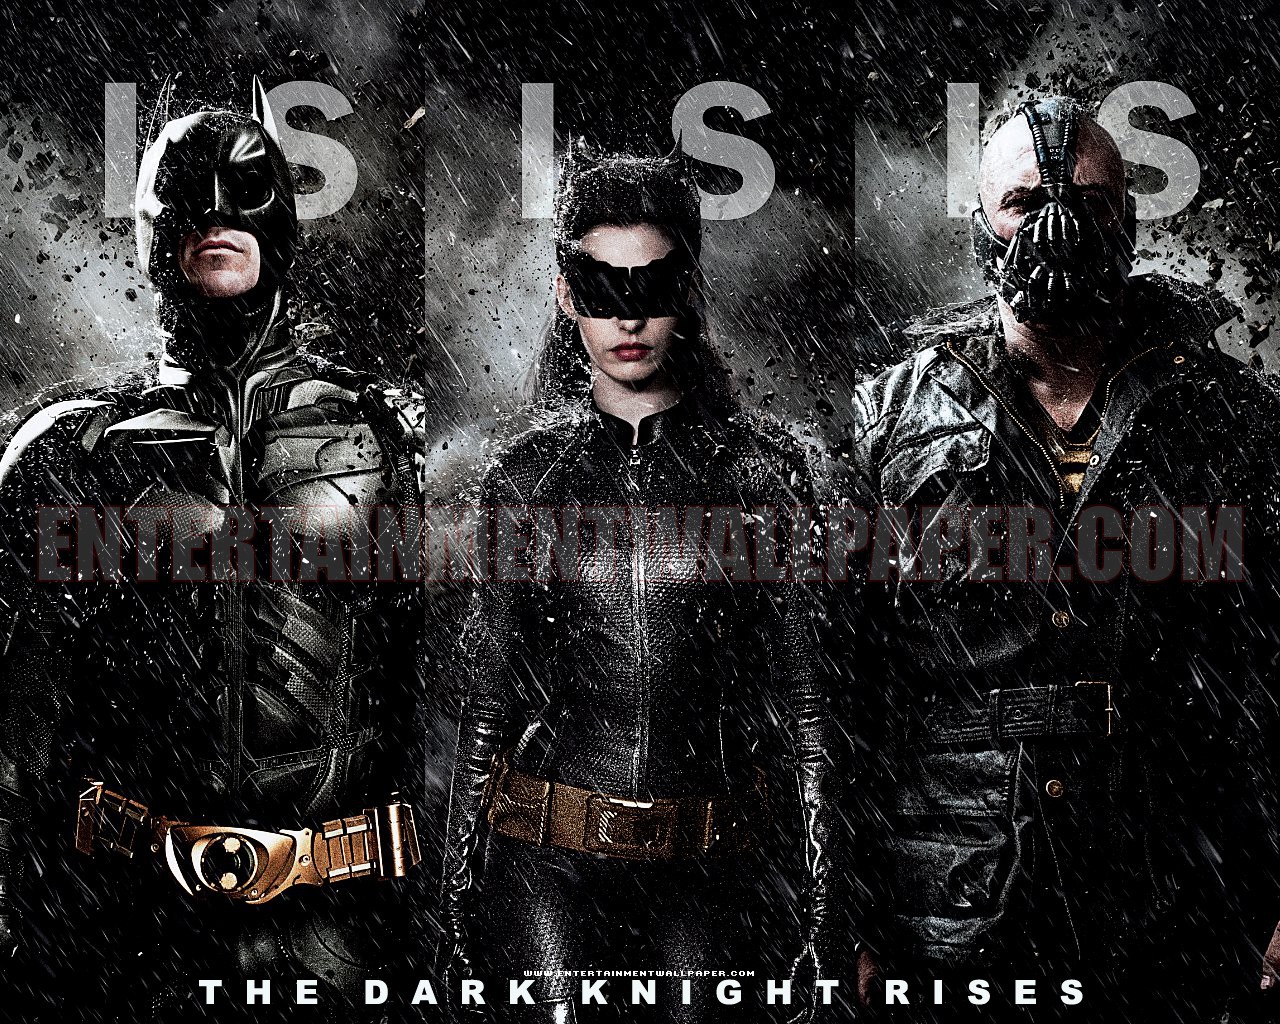 The-Dark-Knight-Rises-2012-upcoming-movies-31017822-1280-1024.jpg